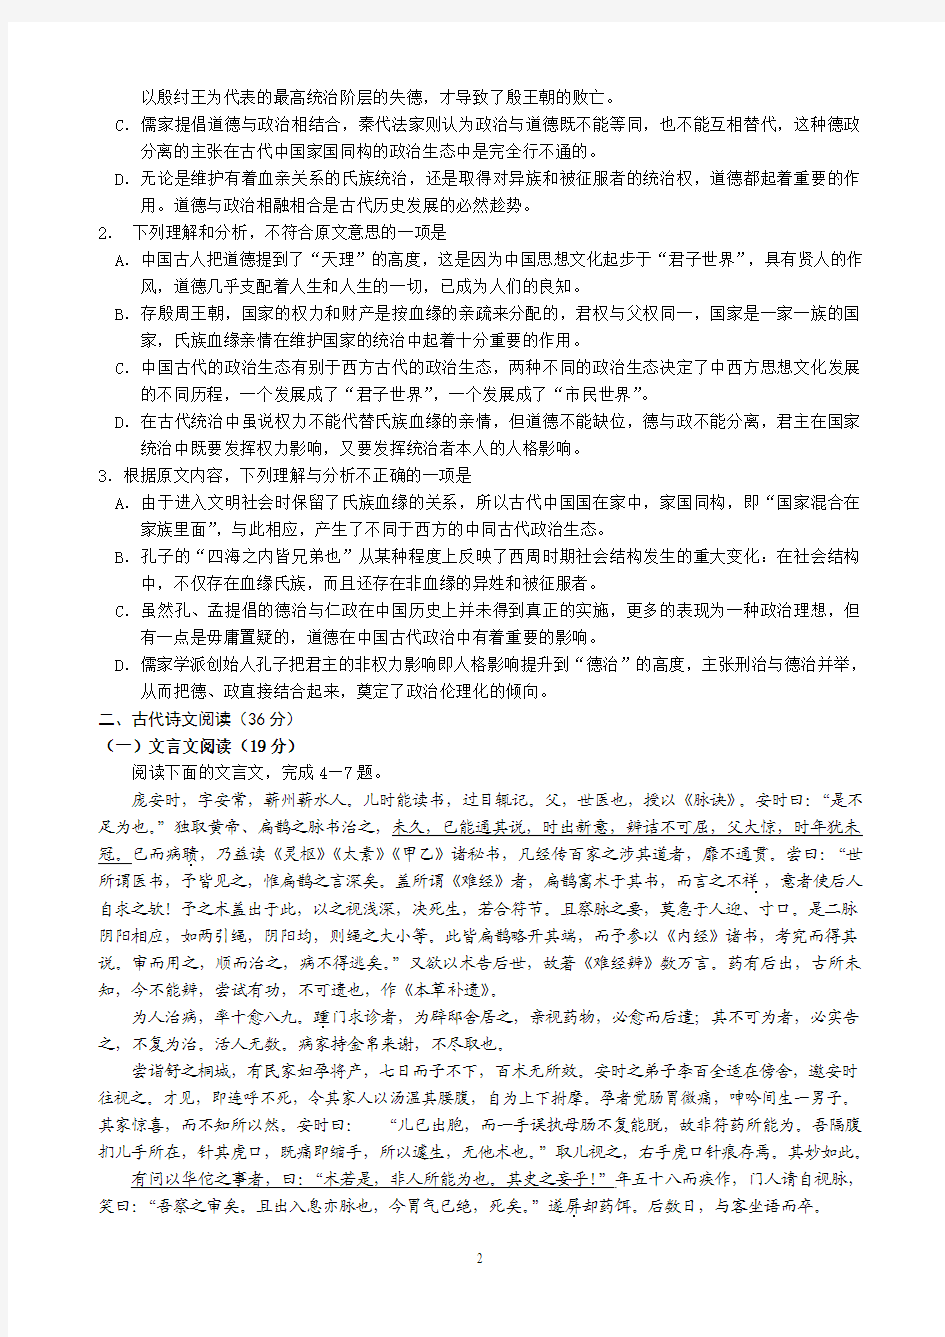 贵阳市2013年高三适应性监测考试(一)语文试题